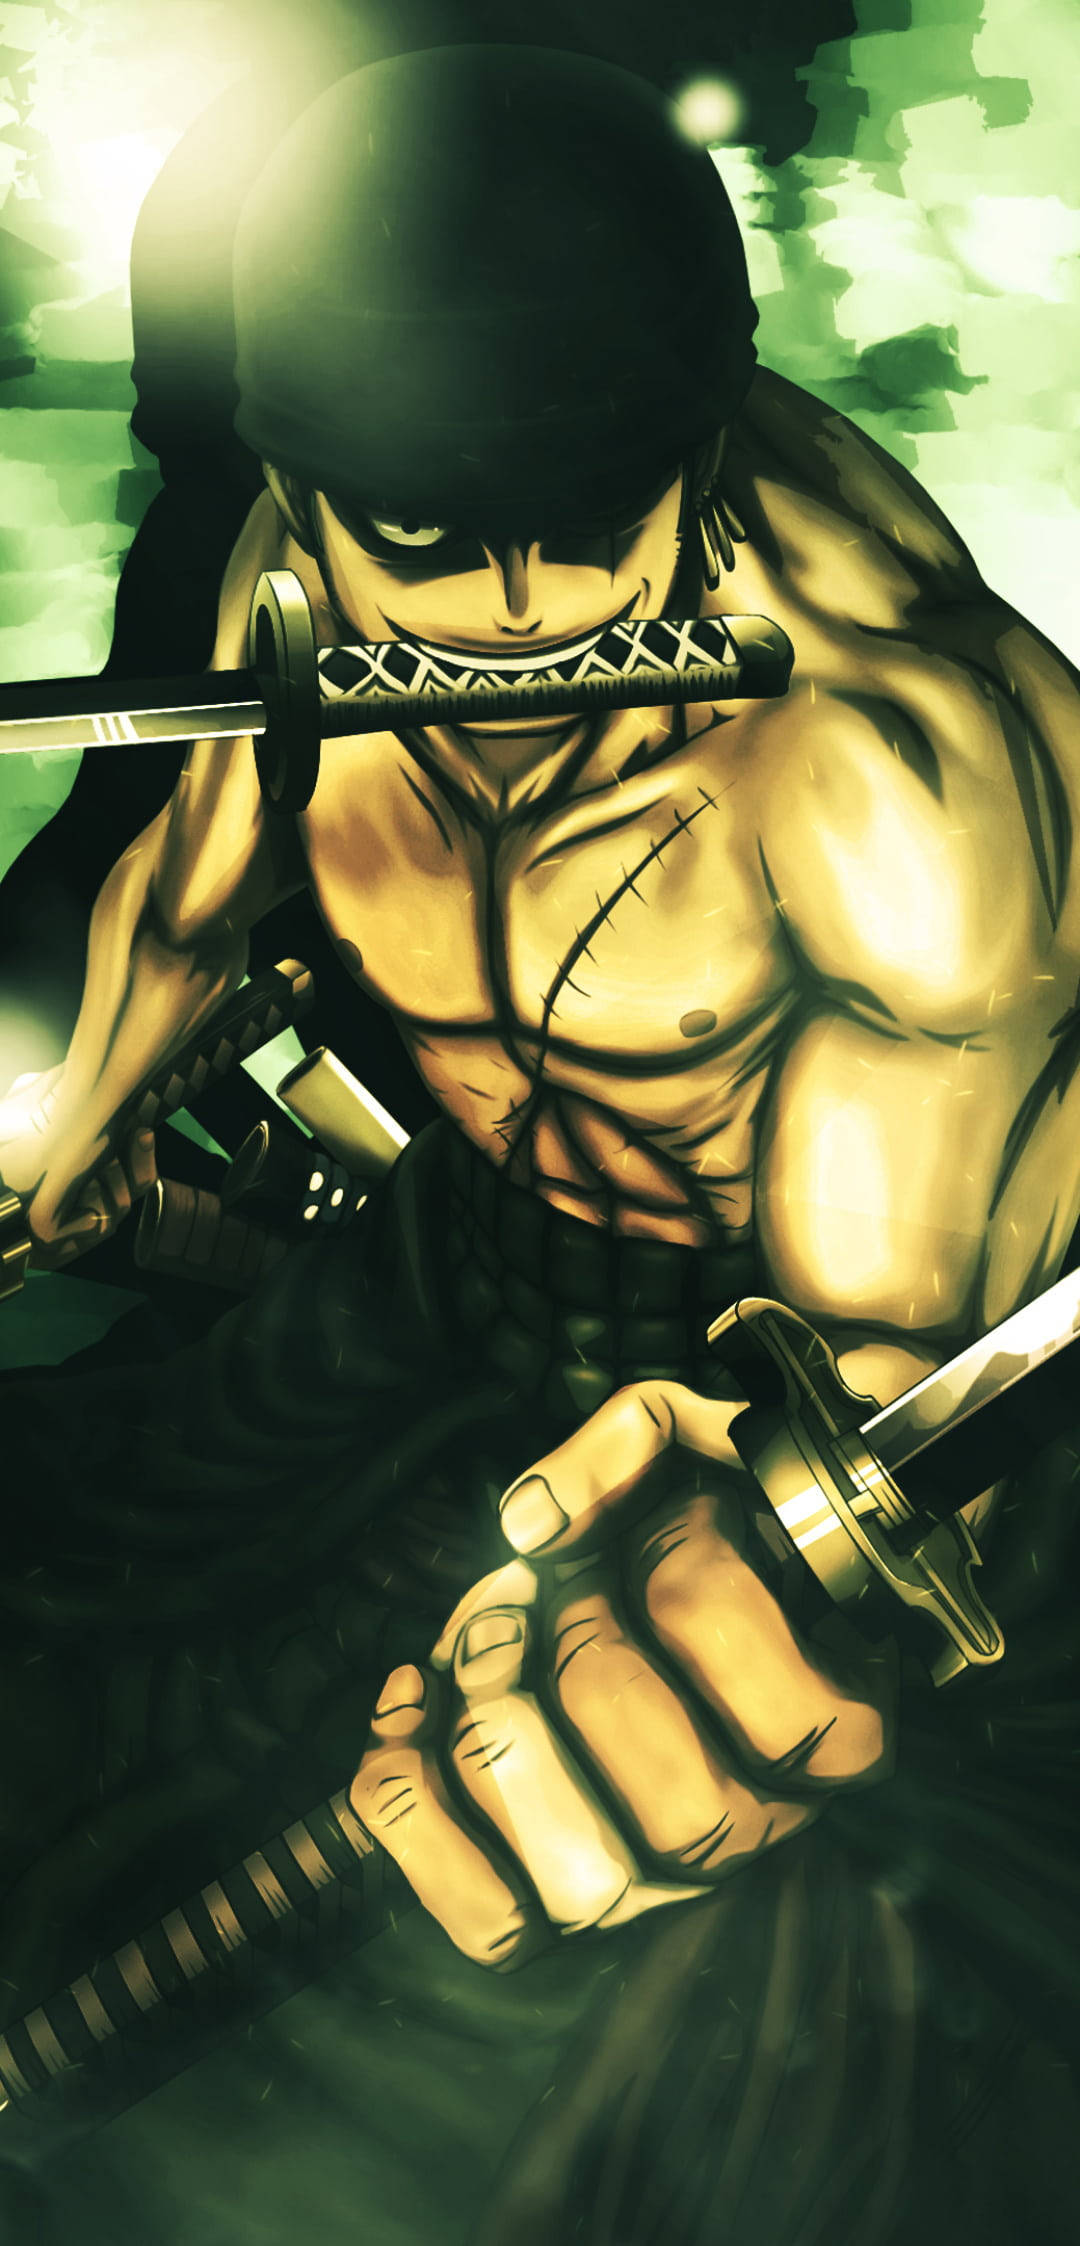 Anime swordsman by TheRenderKnight on DeviantArt-demhanvico.com.vn